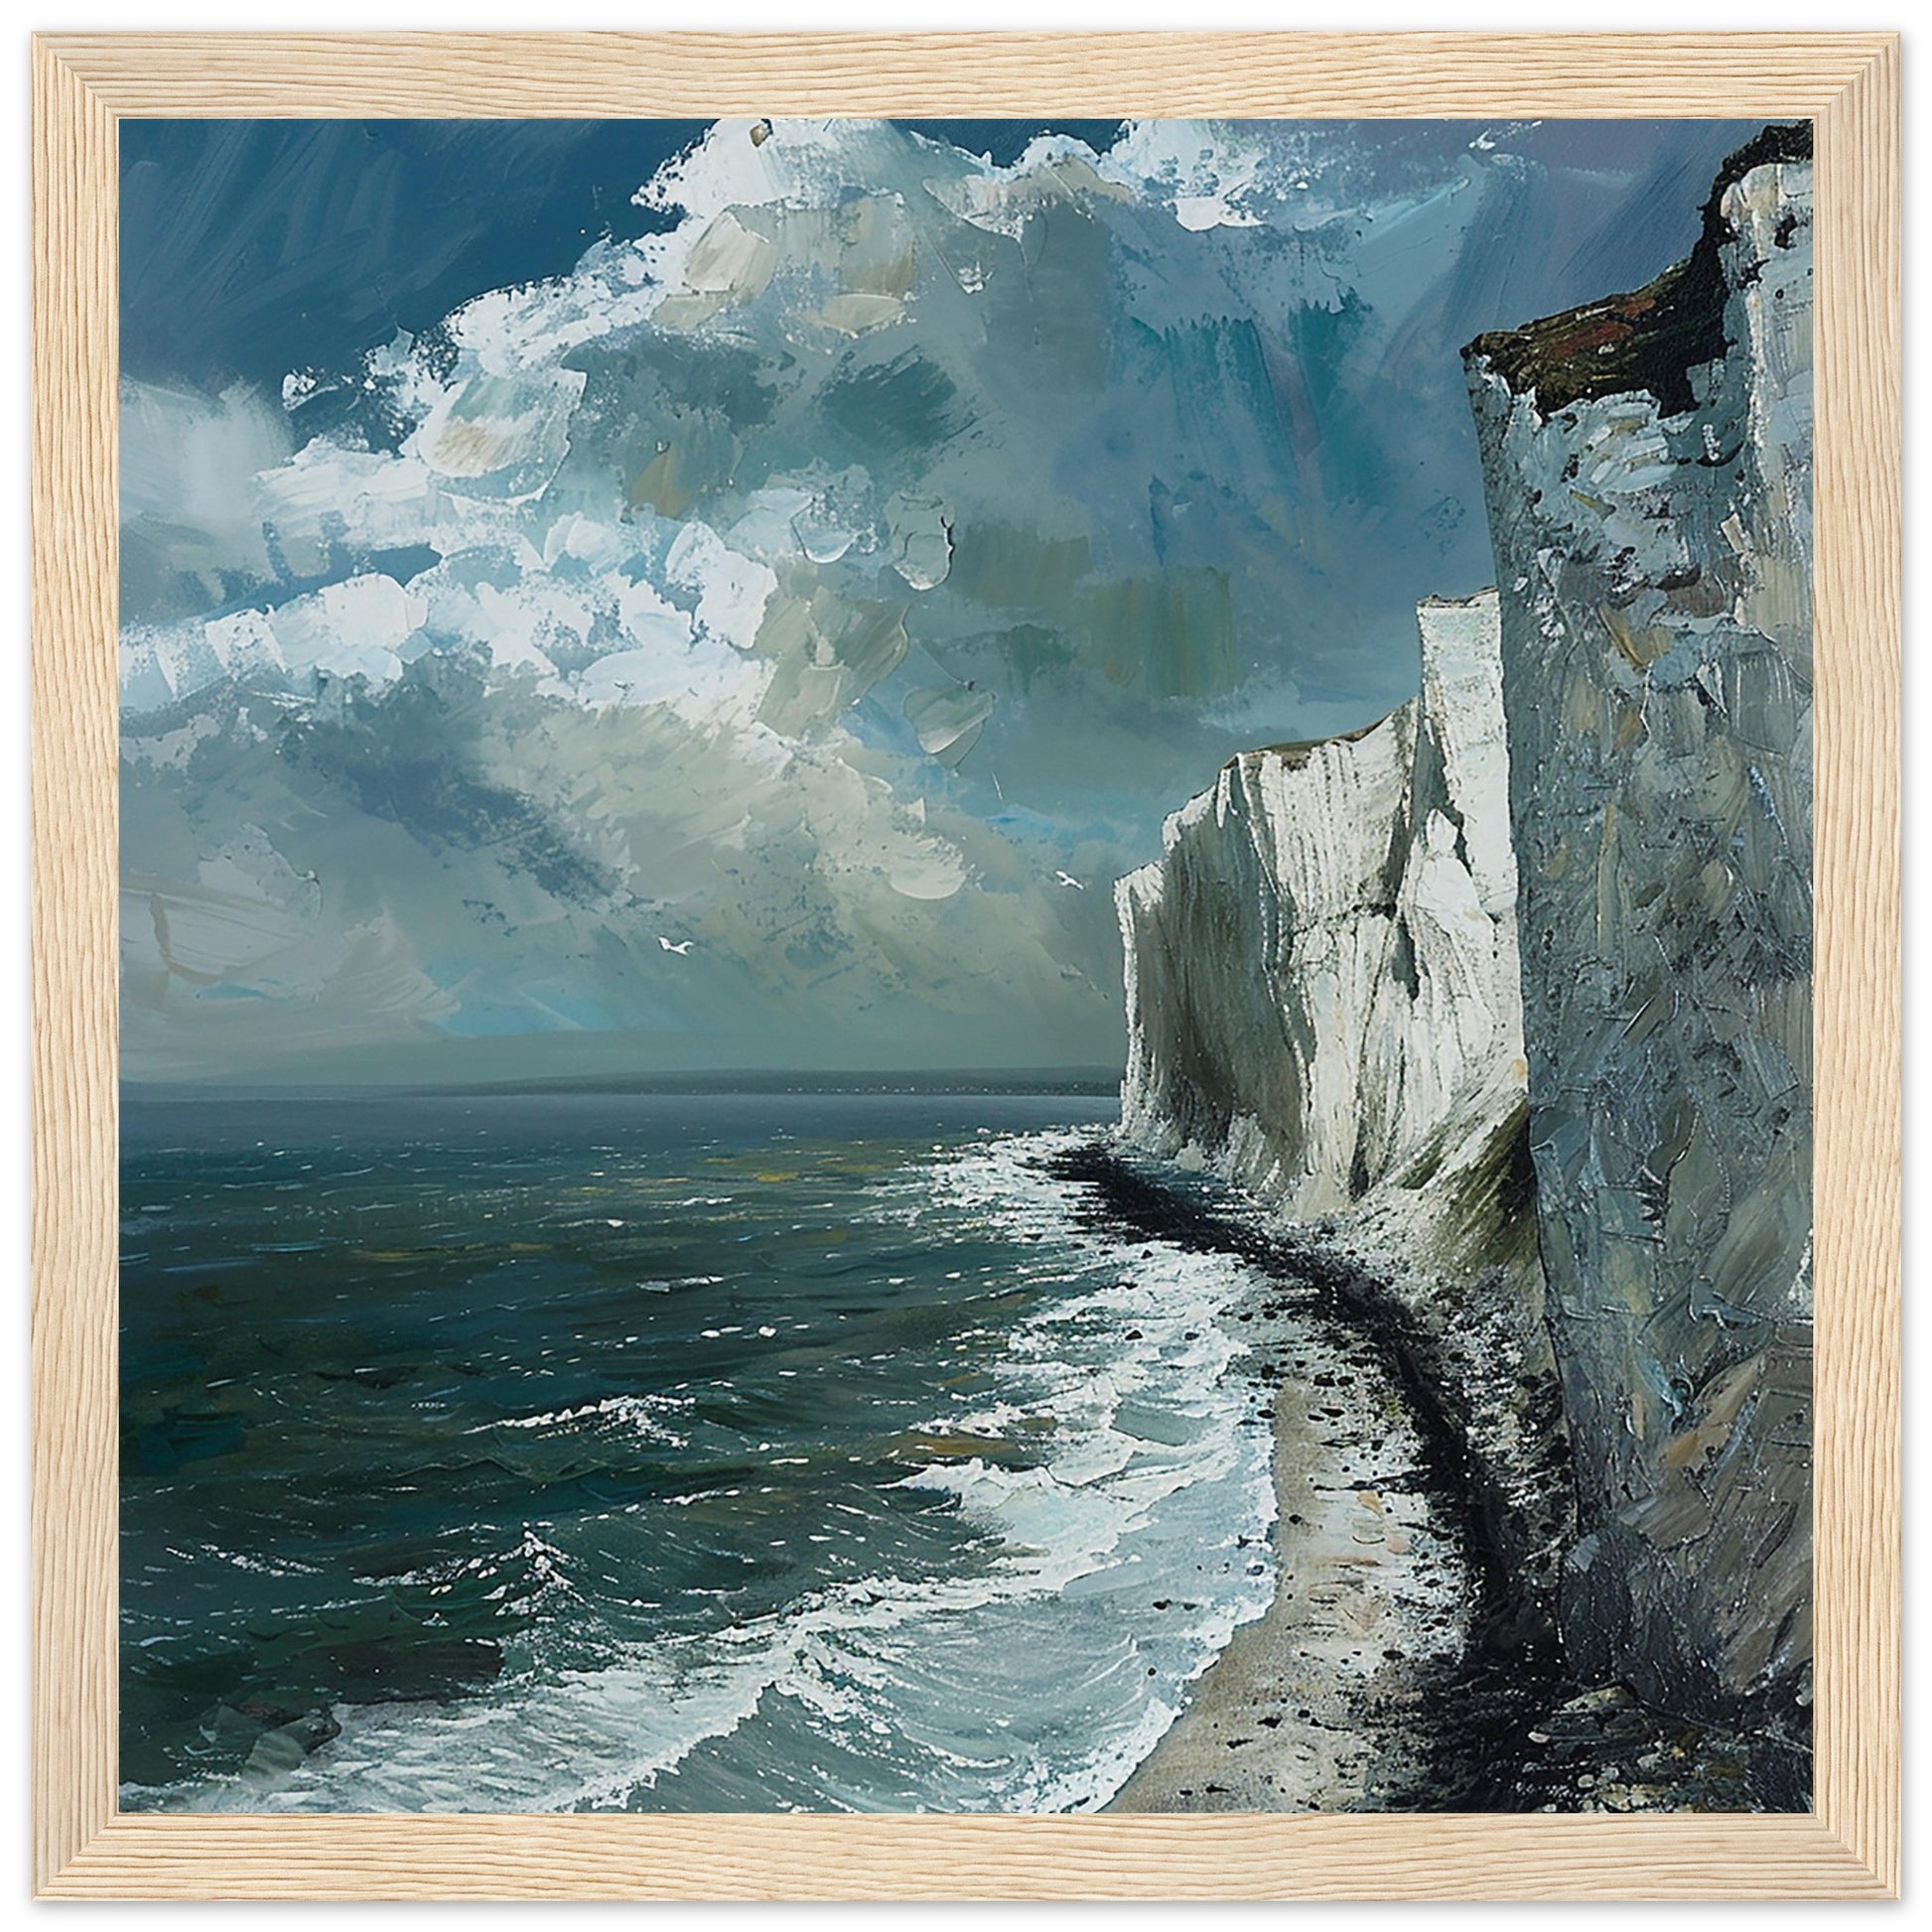 Artwork Print Majestic Cliffs: Serenity at Sea, Dover large framed Wood Frame| By Print Room Ltd